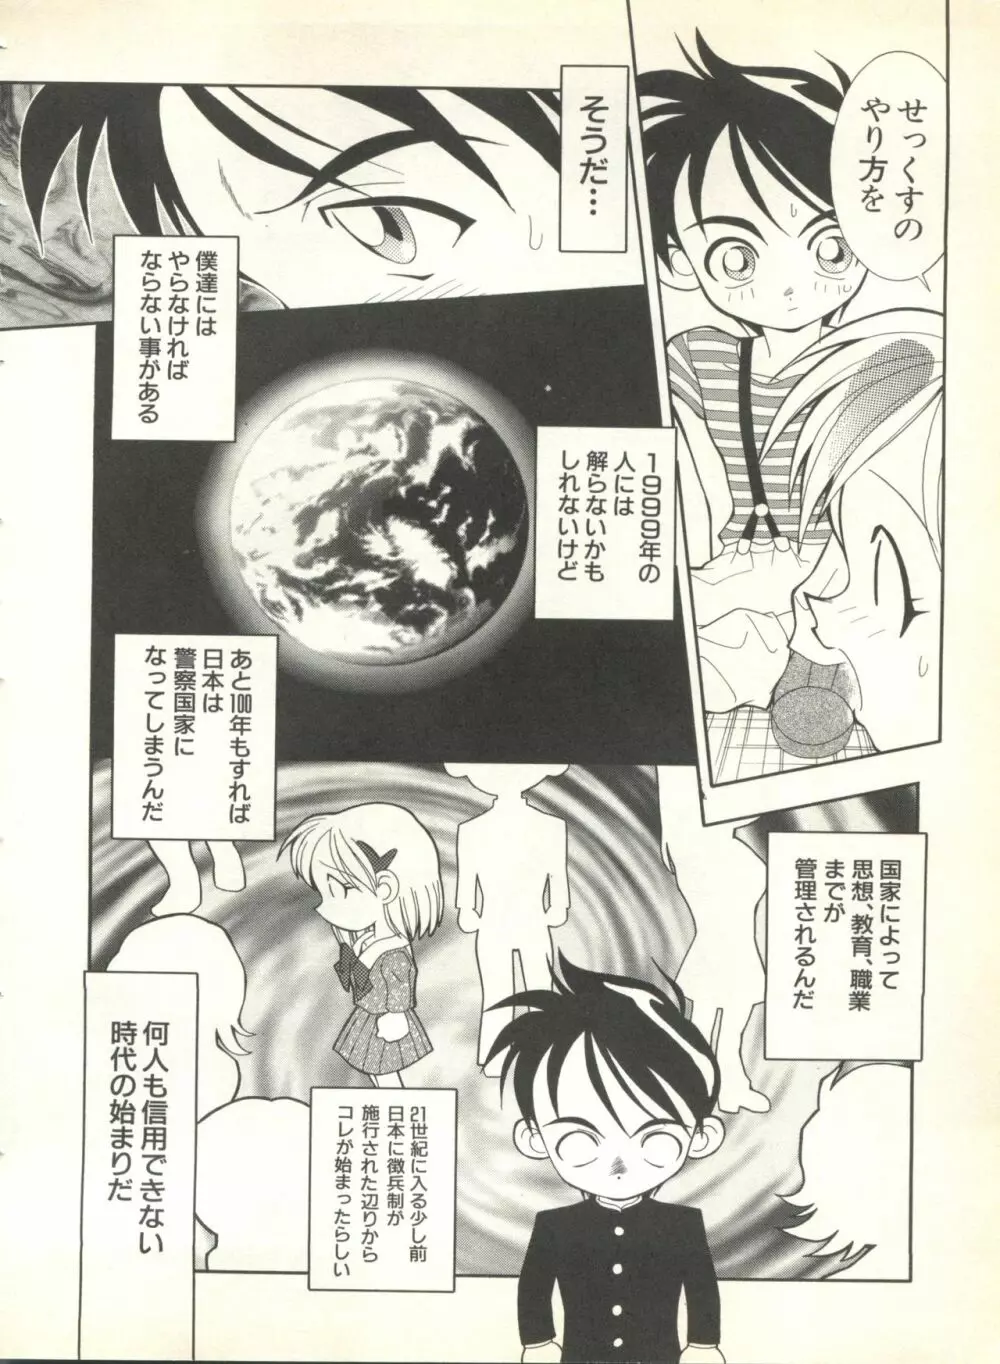 パイク Pai.kuu 1999 Oct vol.22 神無月 50ページ